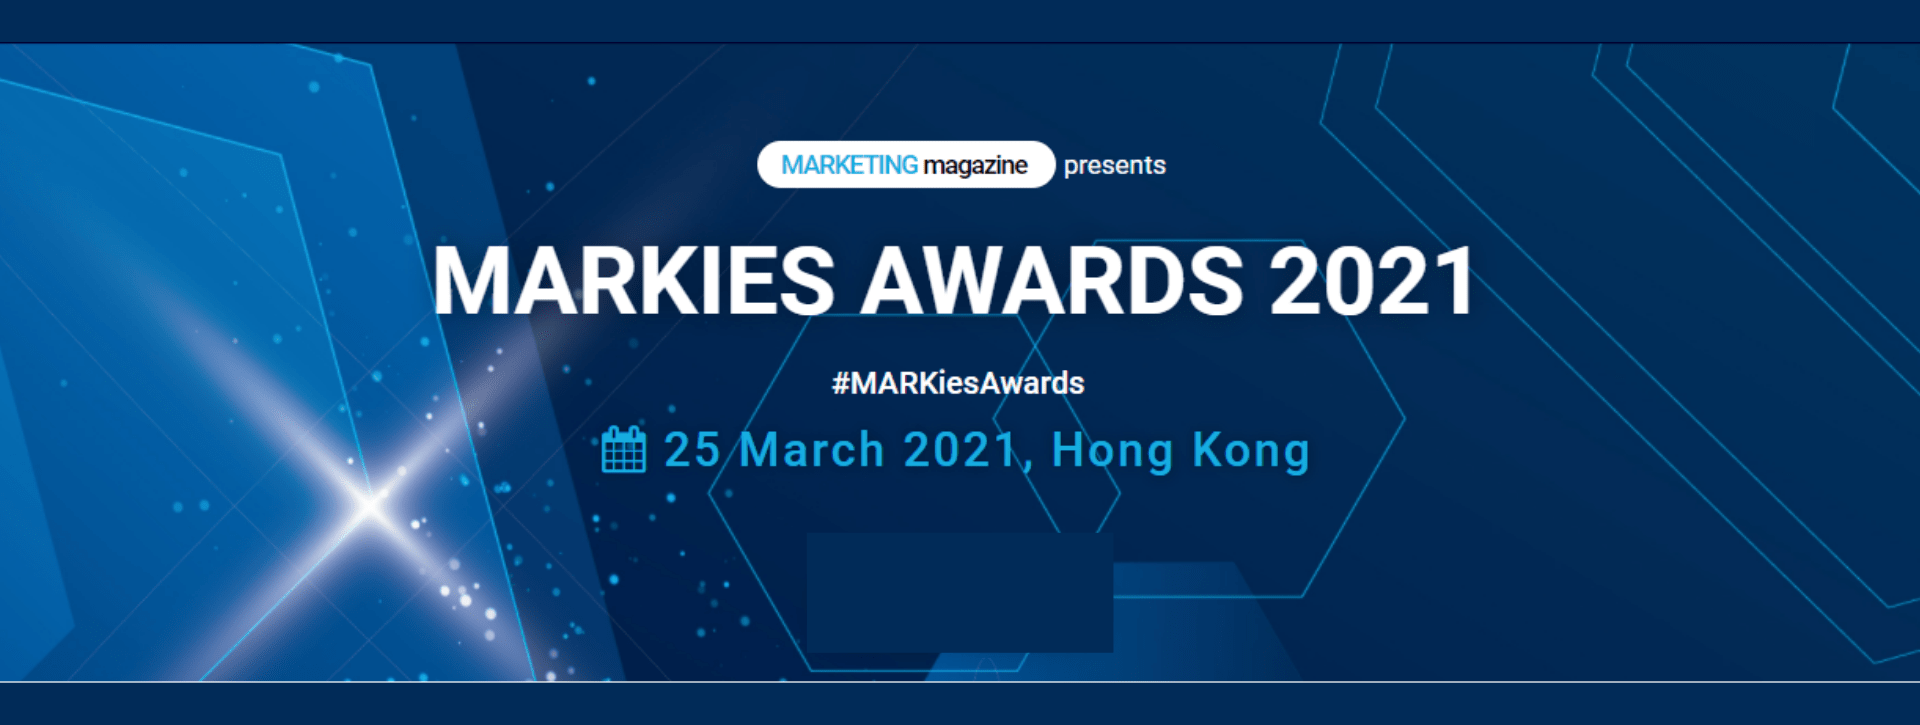 iClick crowned two Bronze awards at MARKies Awards Hong Kong 2021!